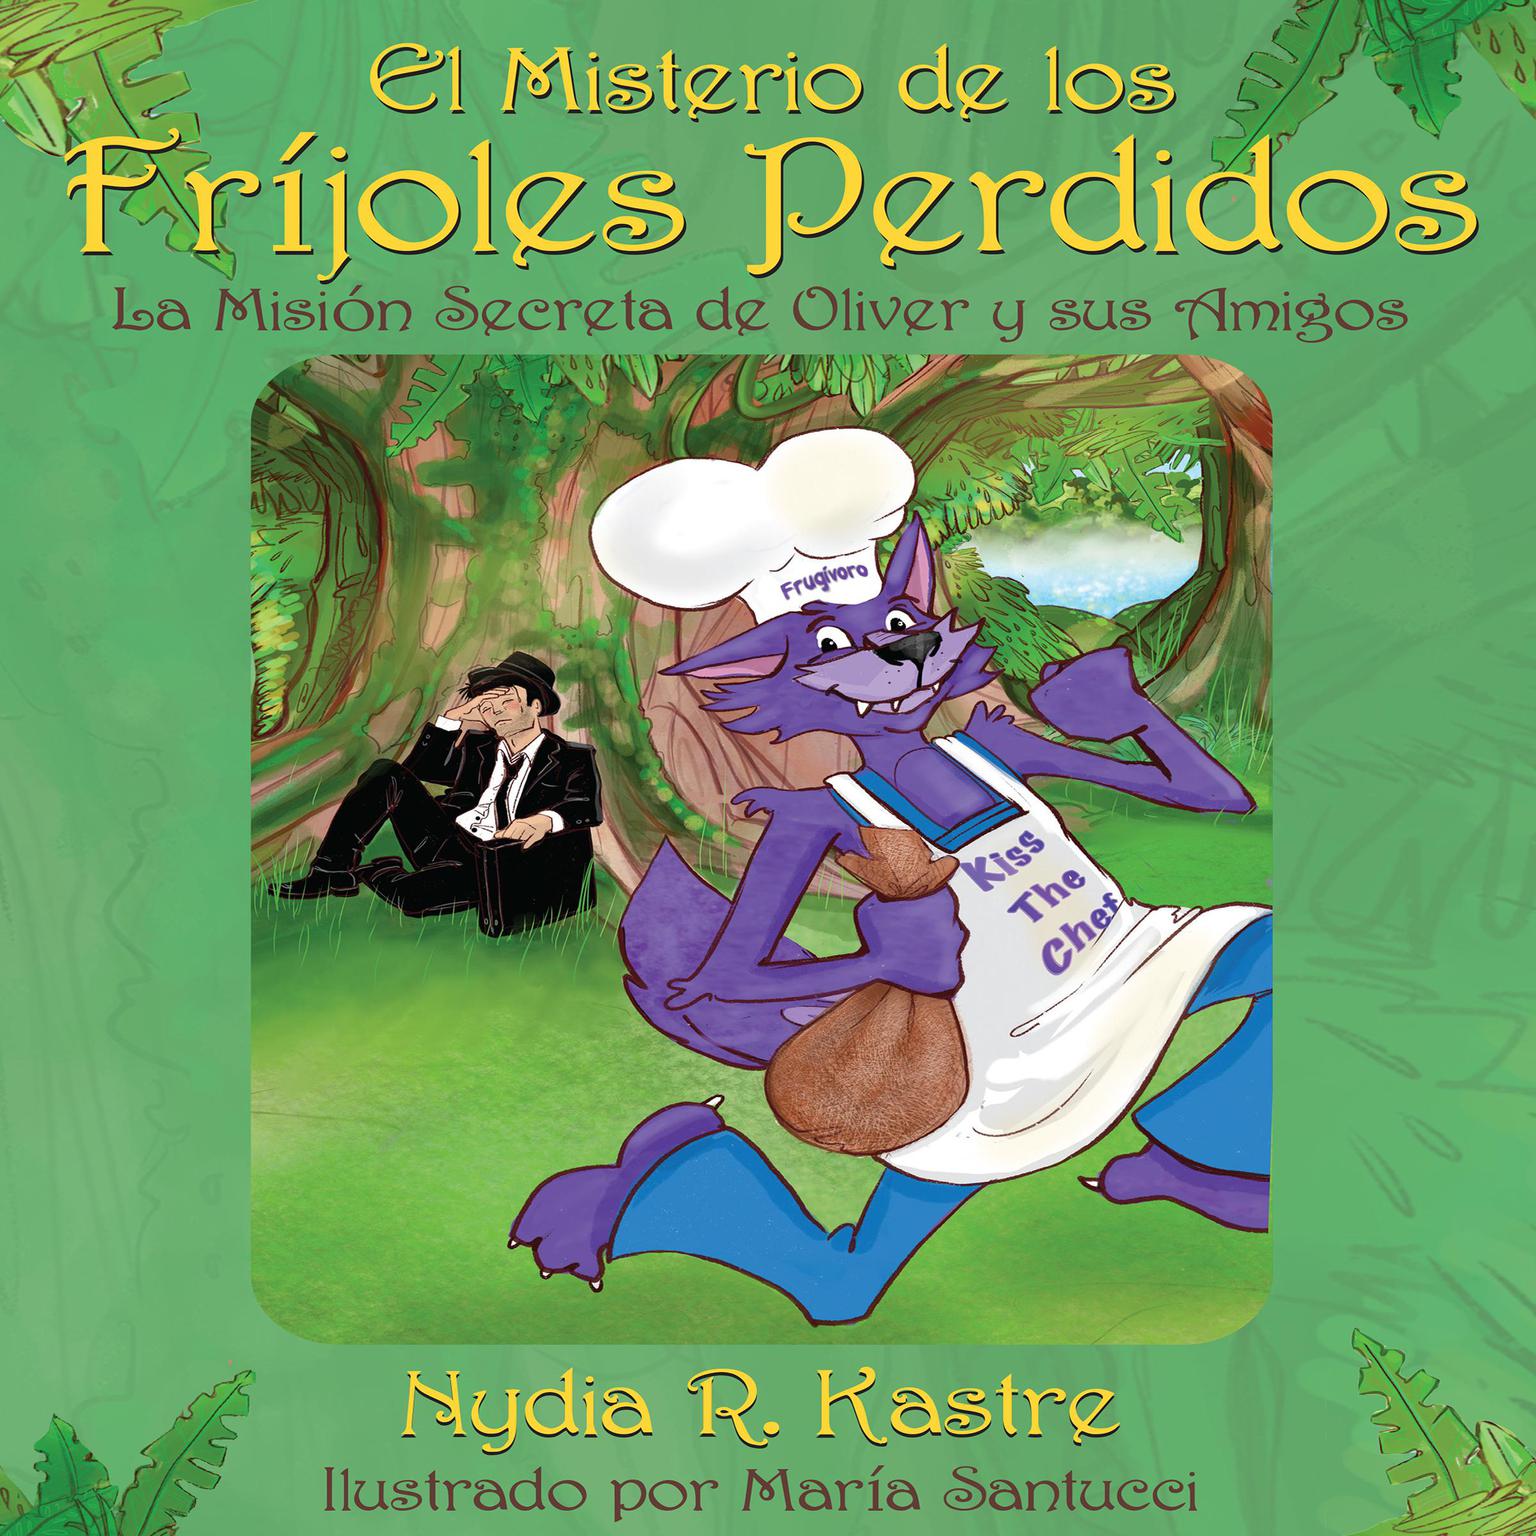 El Misterio de los Fríjoles Perdidos Audiobook, by Nydia R. Kastre